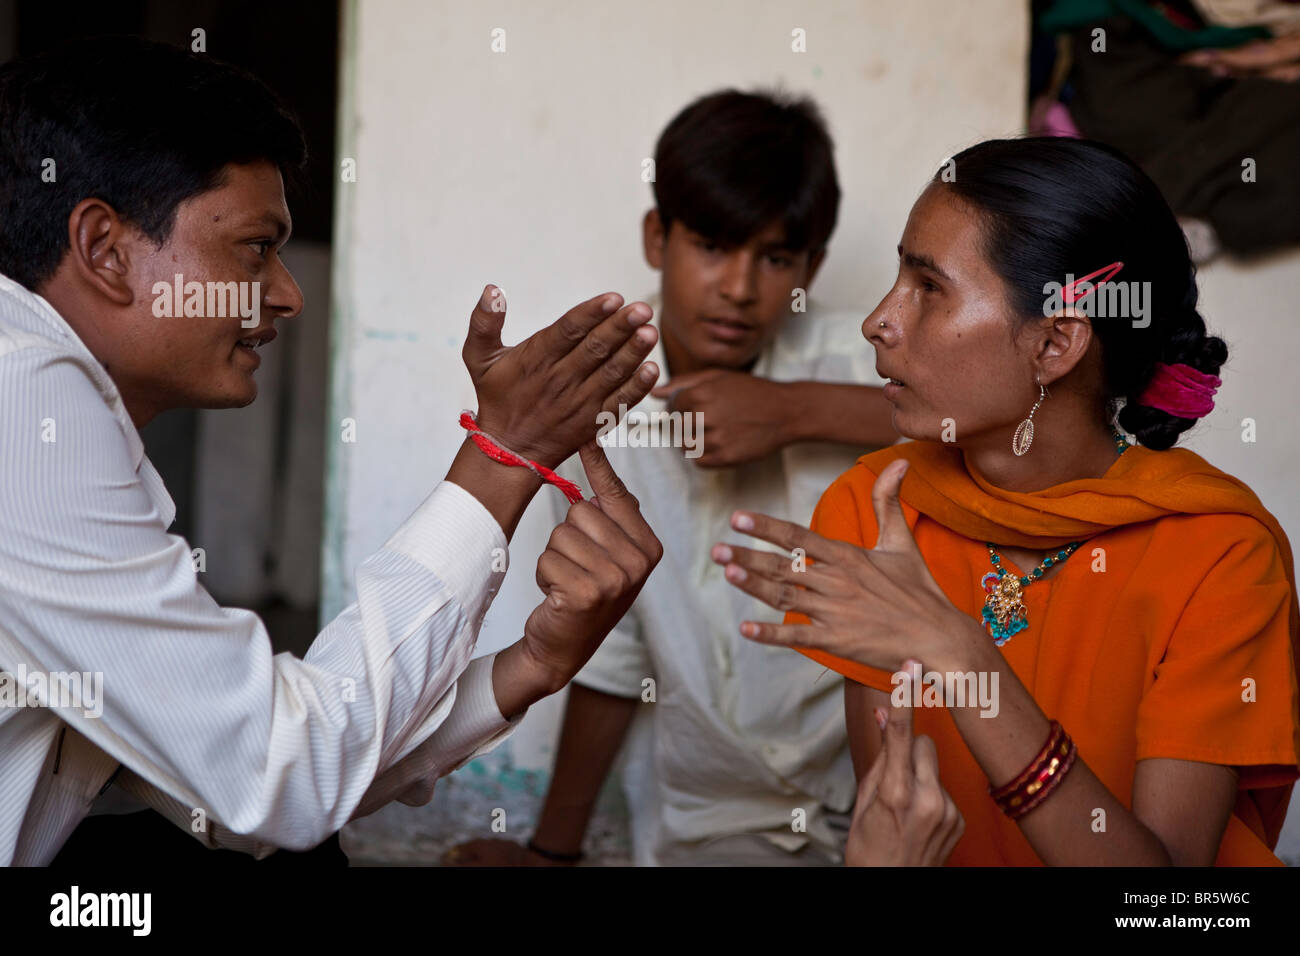 Deepak travaille avec 16-year-old Hansa qui est sourde et aveugle. Ils apprennent la langue des signes tactile. Ahmedabad, Inde. Banque D'Images